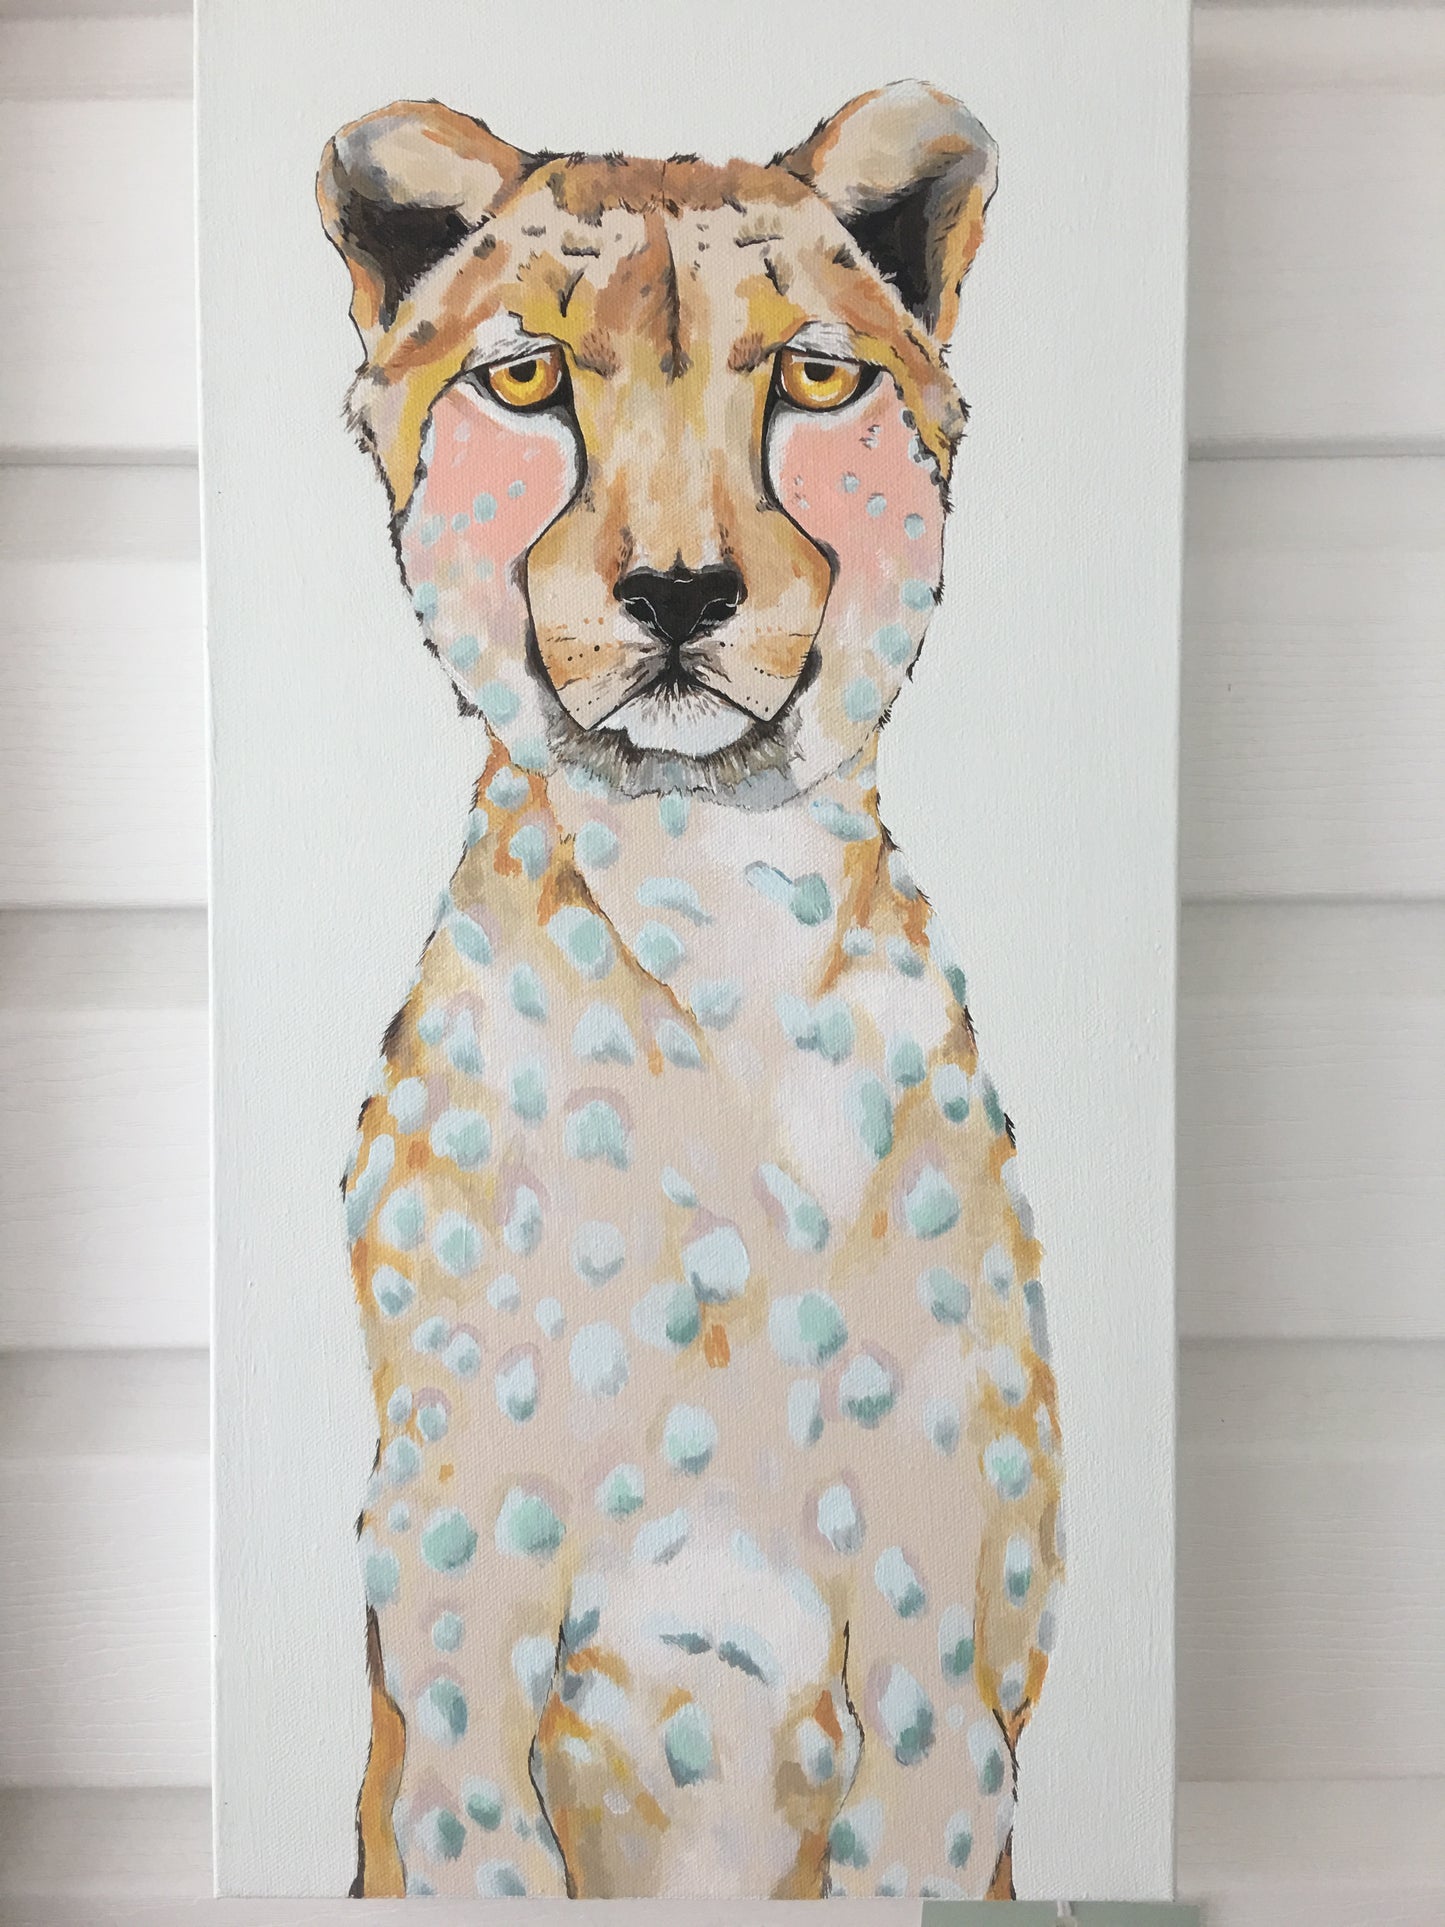 Lida the Cheetah Original Painting